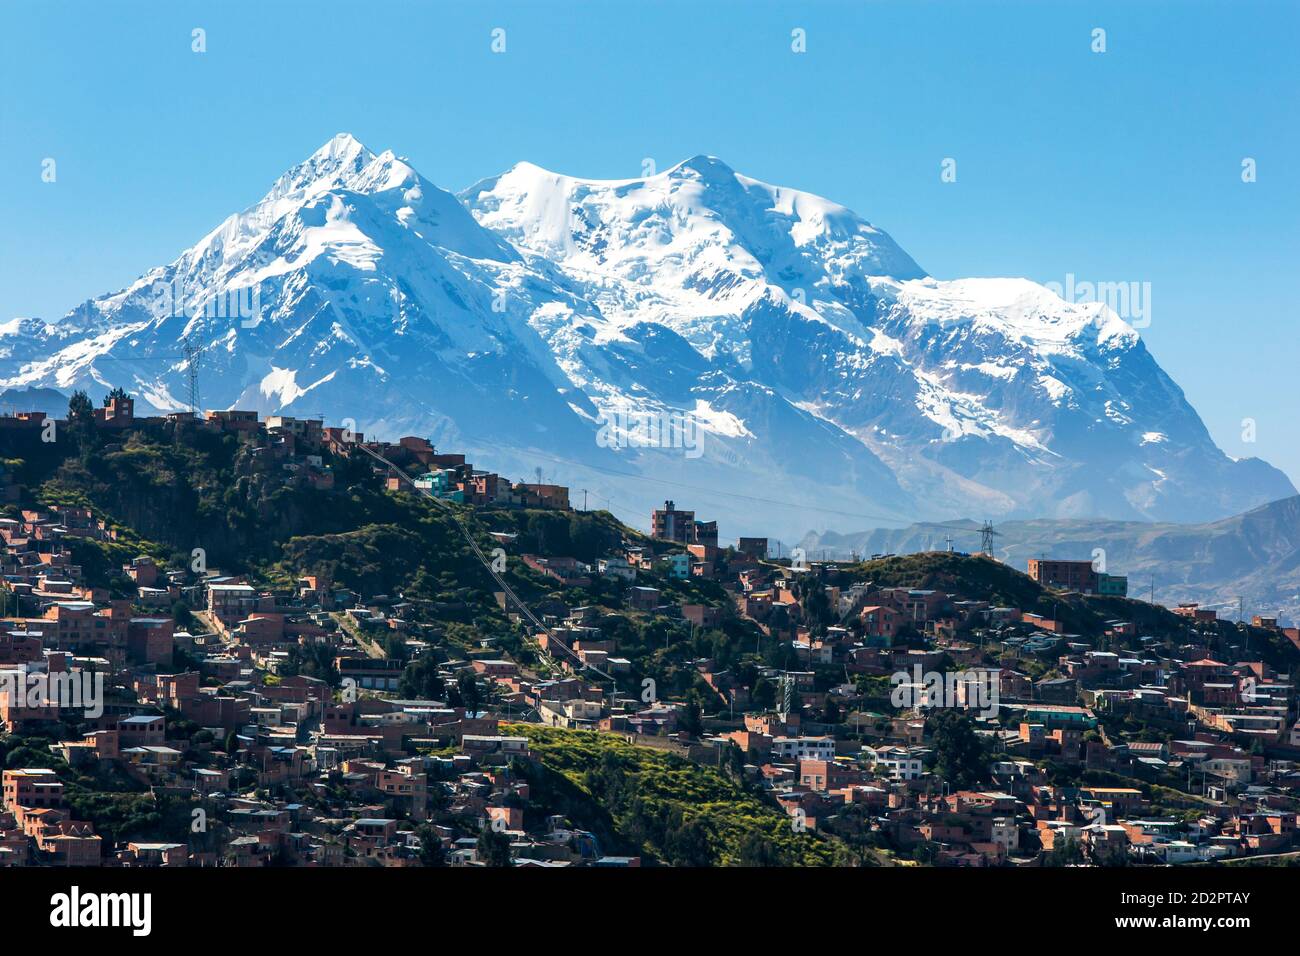 Die moderne Stadt La Paz in Bolivien überschattet von Illimani (Aymara), der höchste Berg (6,438 Meter) in der Cordillera Real von Bolivien ist. Stockfoto